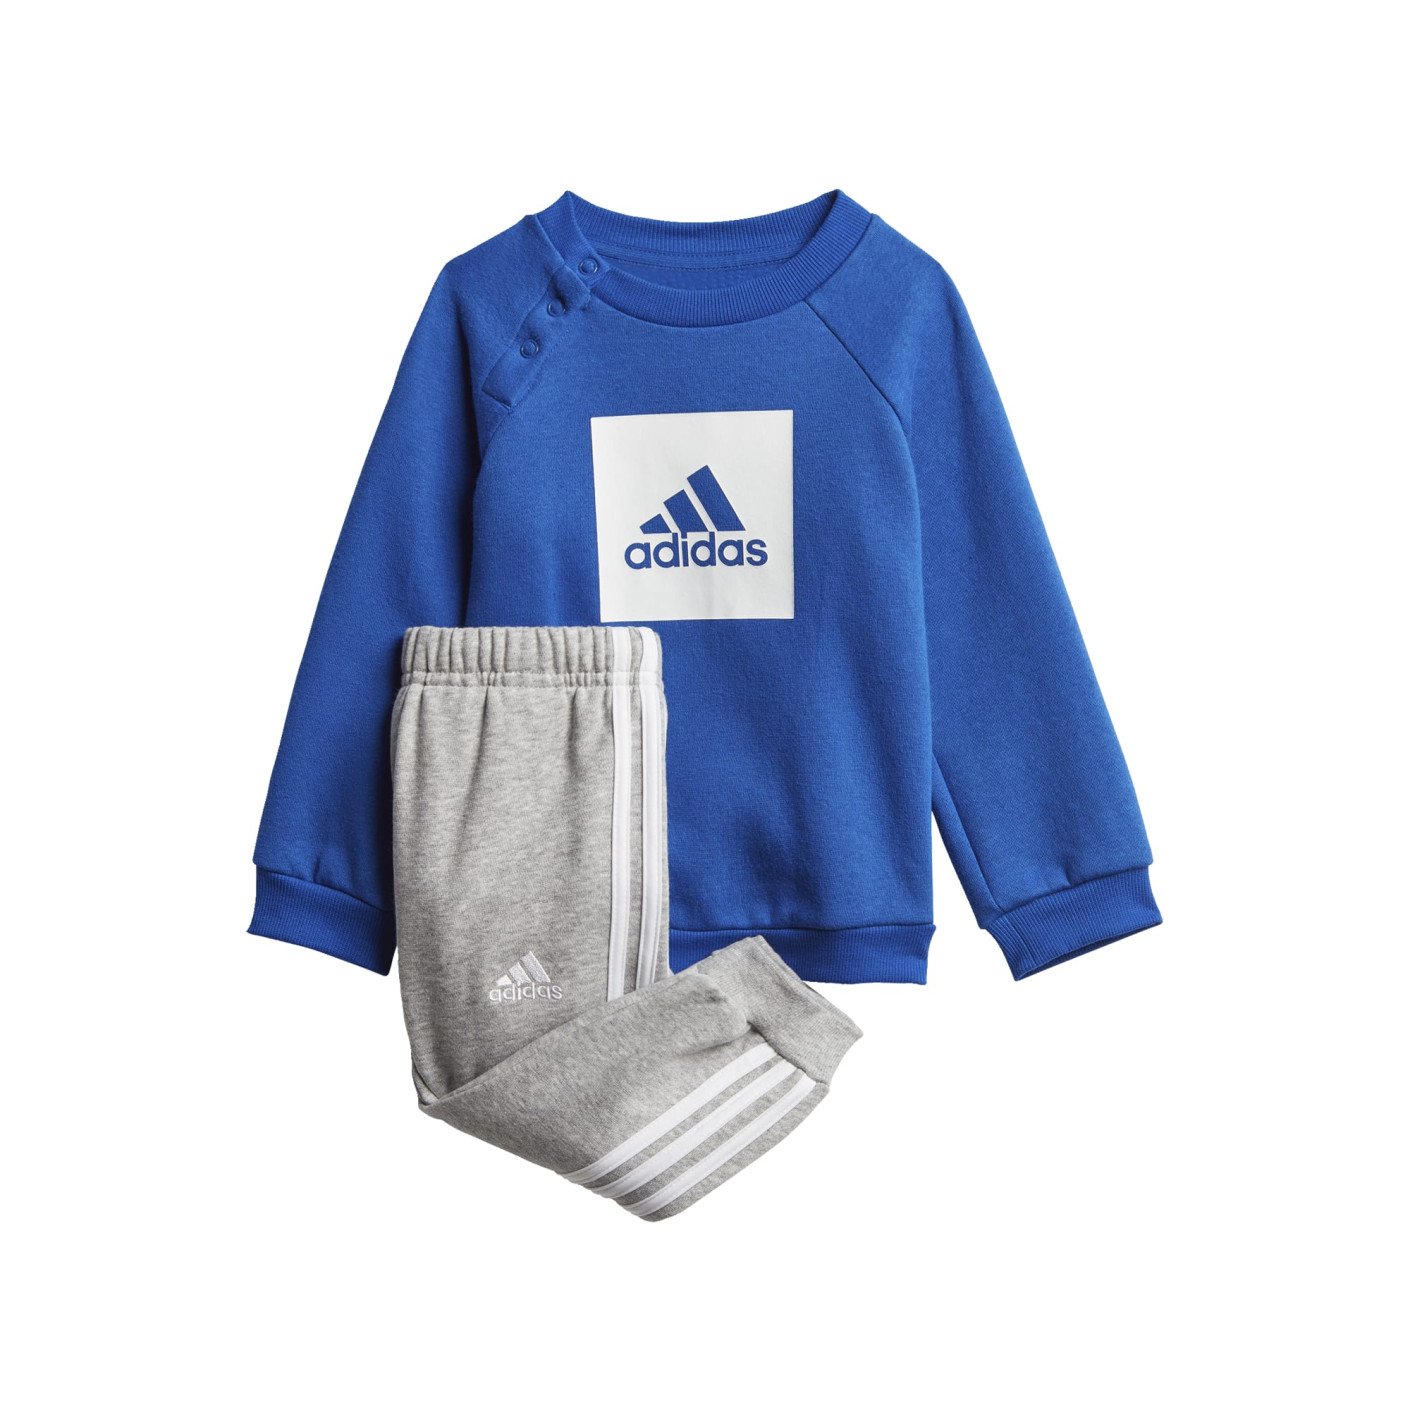 binair Moeras heerlijkheid adidas 3-Stripes Fleece Jogging Trainingspak Baby Blauw Grijs